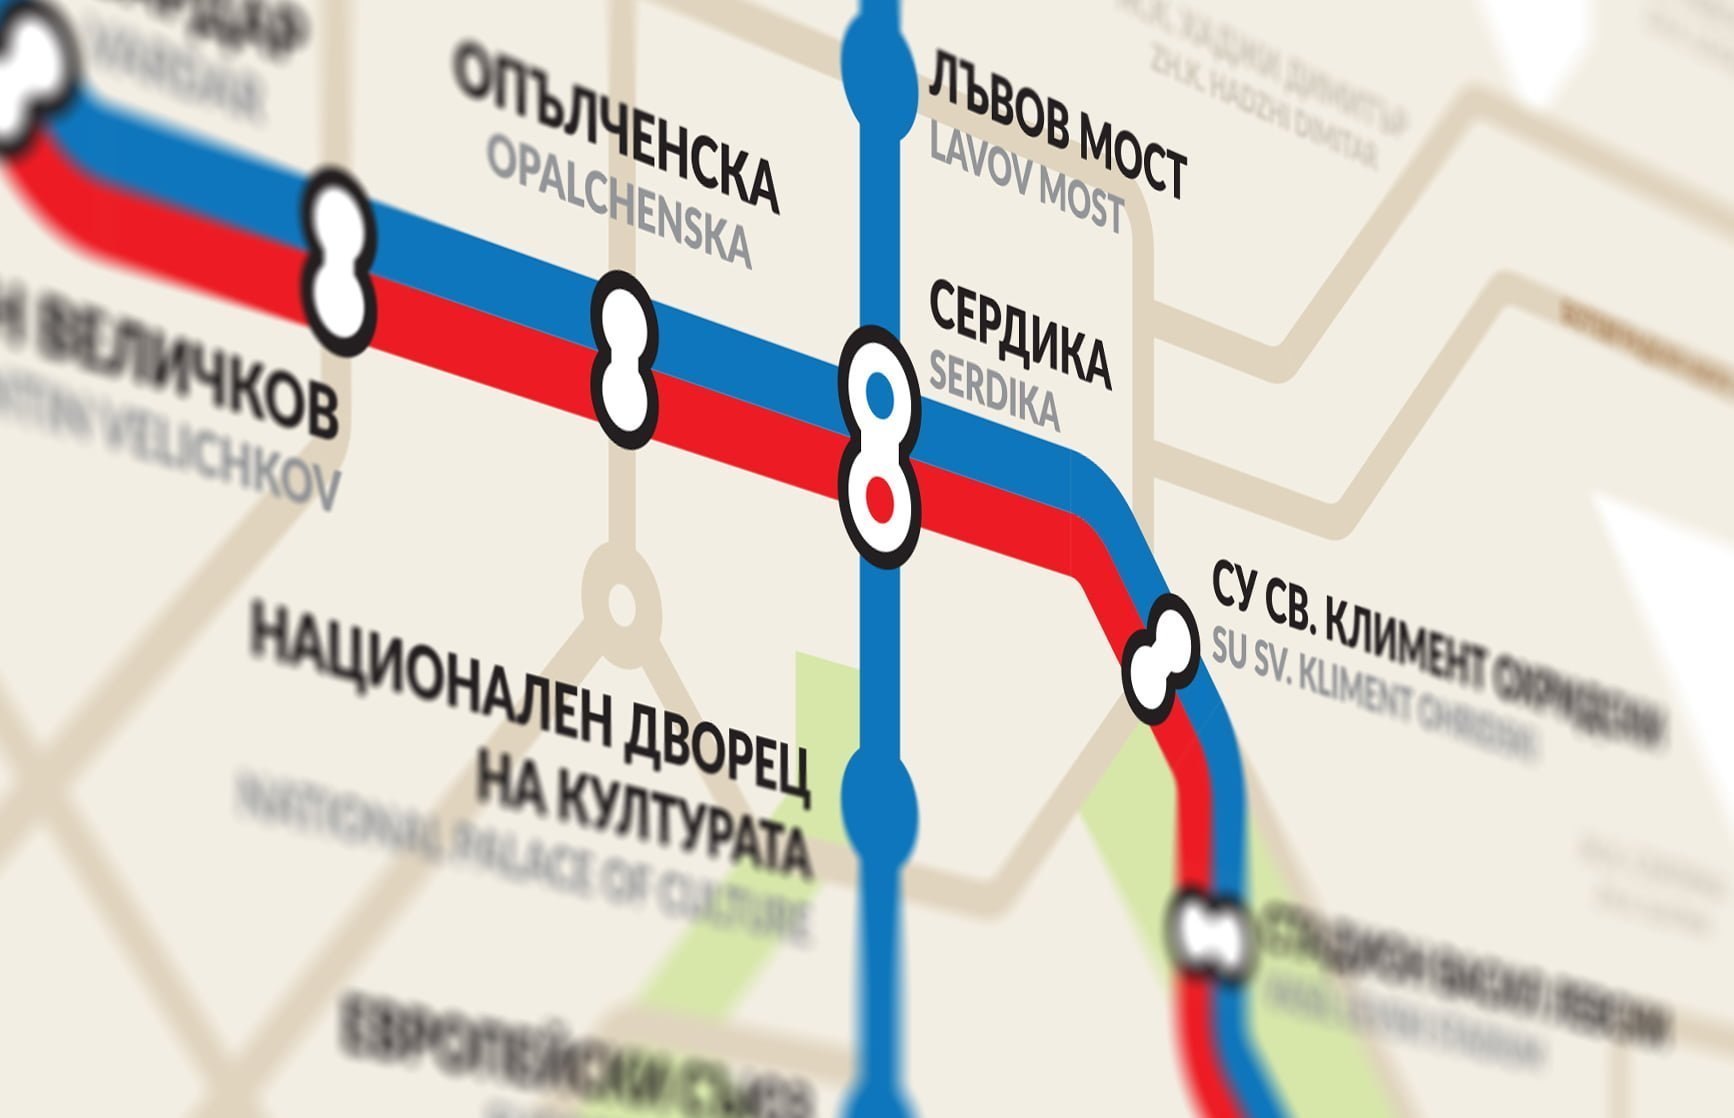 Камерън Бут: Новата географска карта на метрото е „просто прекрасна“